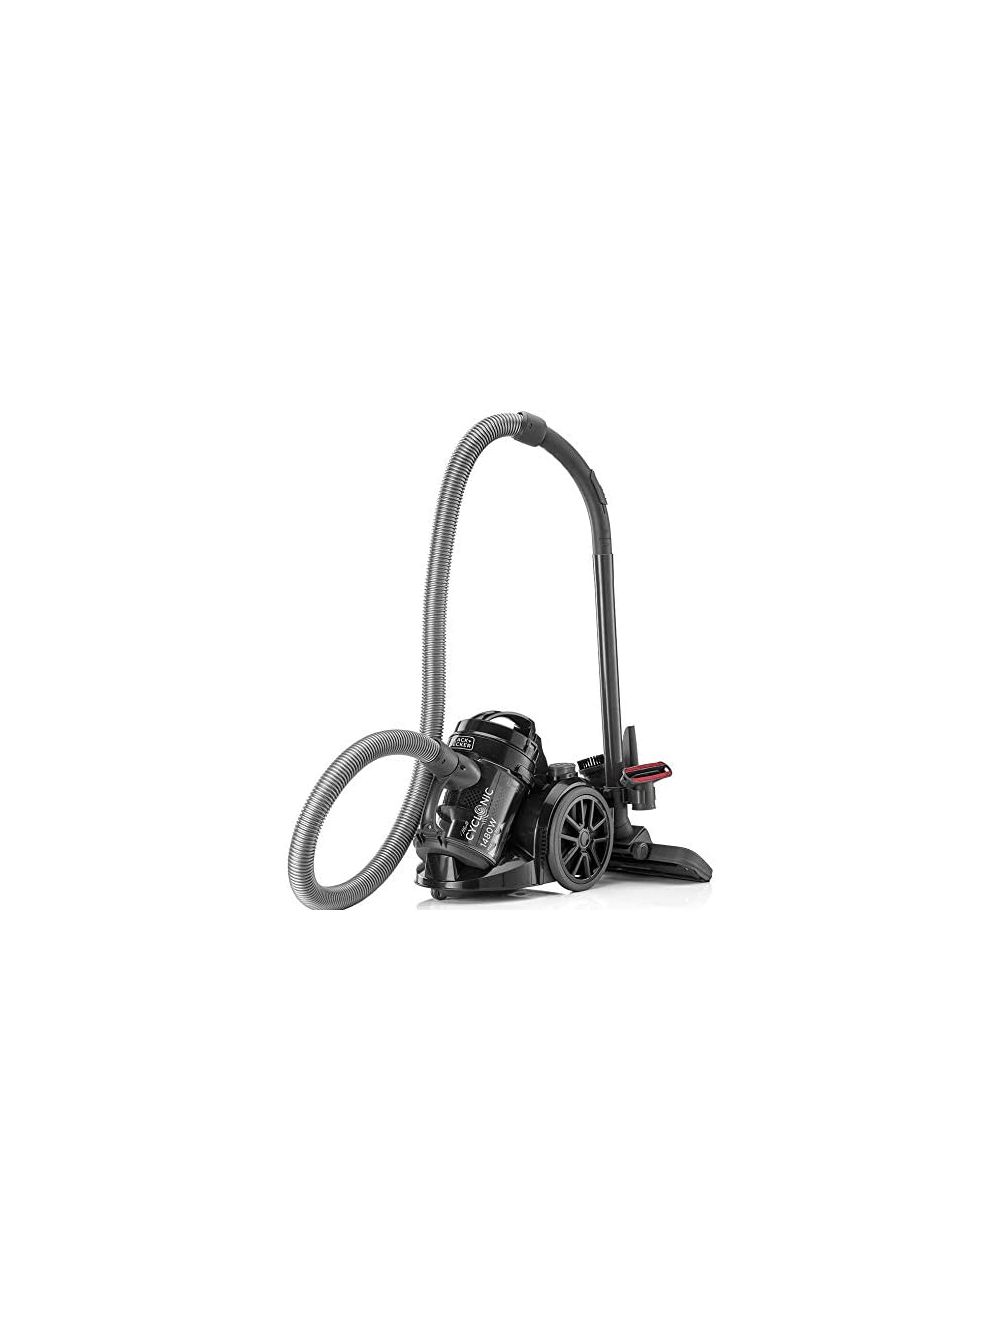 Black & Decker 1400W Multicyclonic Vacuum Cleaner-VM1480-B5